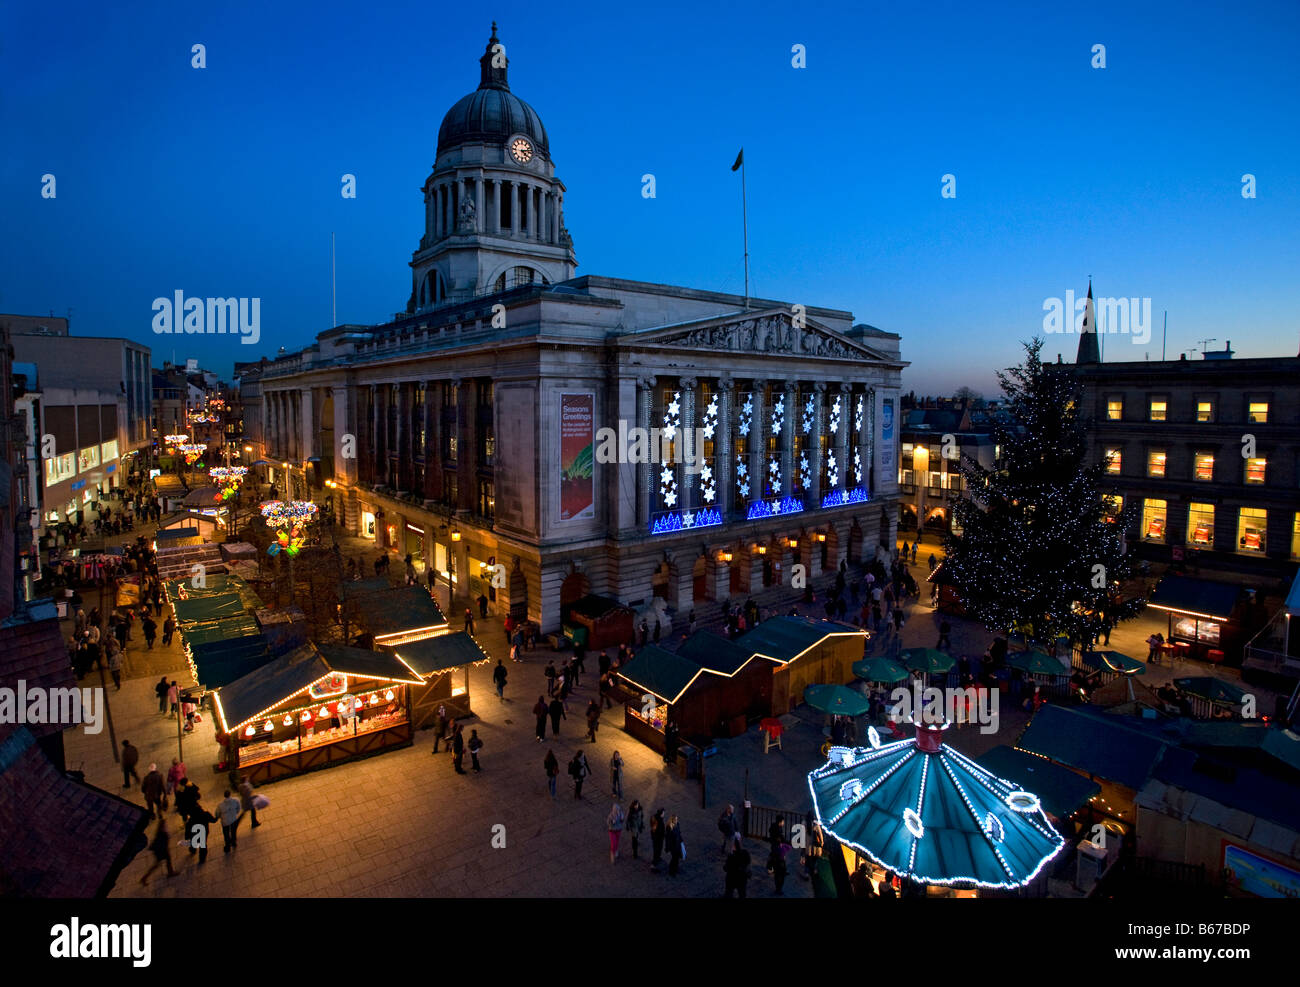 Ayuntamiento de Nottingham con luces navideñas y mercado,Inglaterra Foto de stock